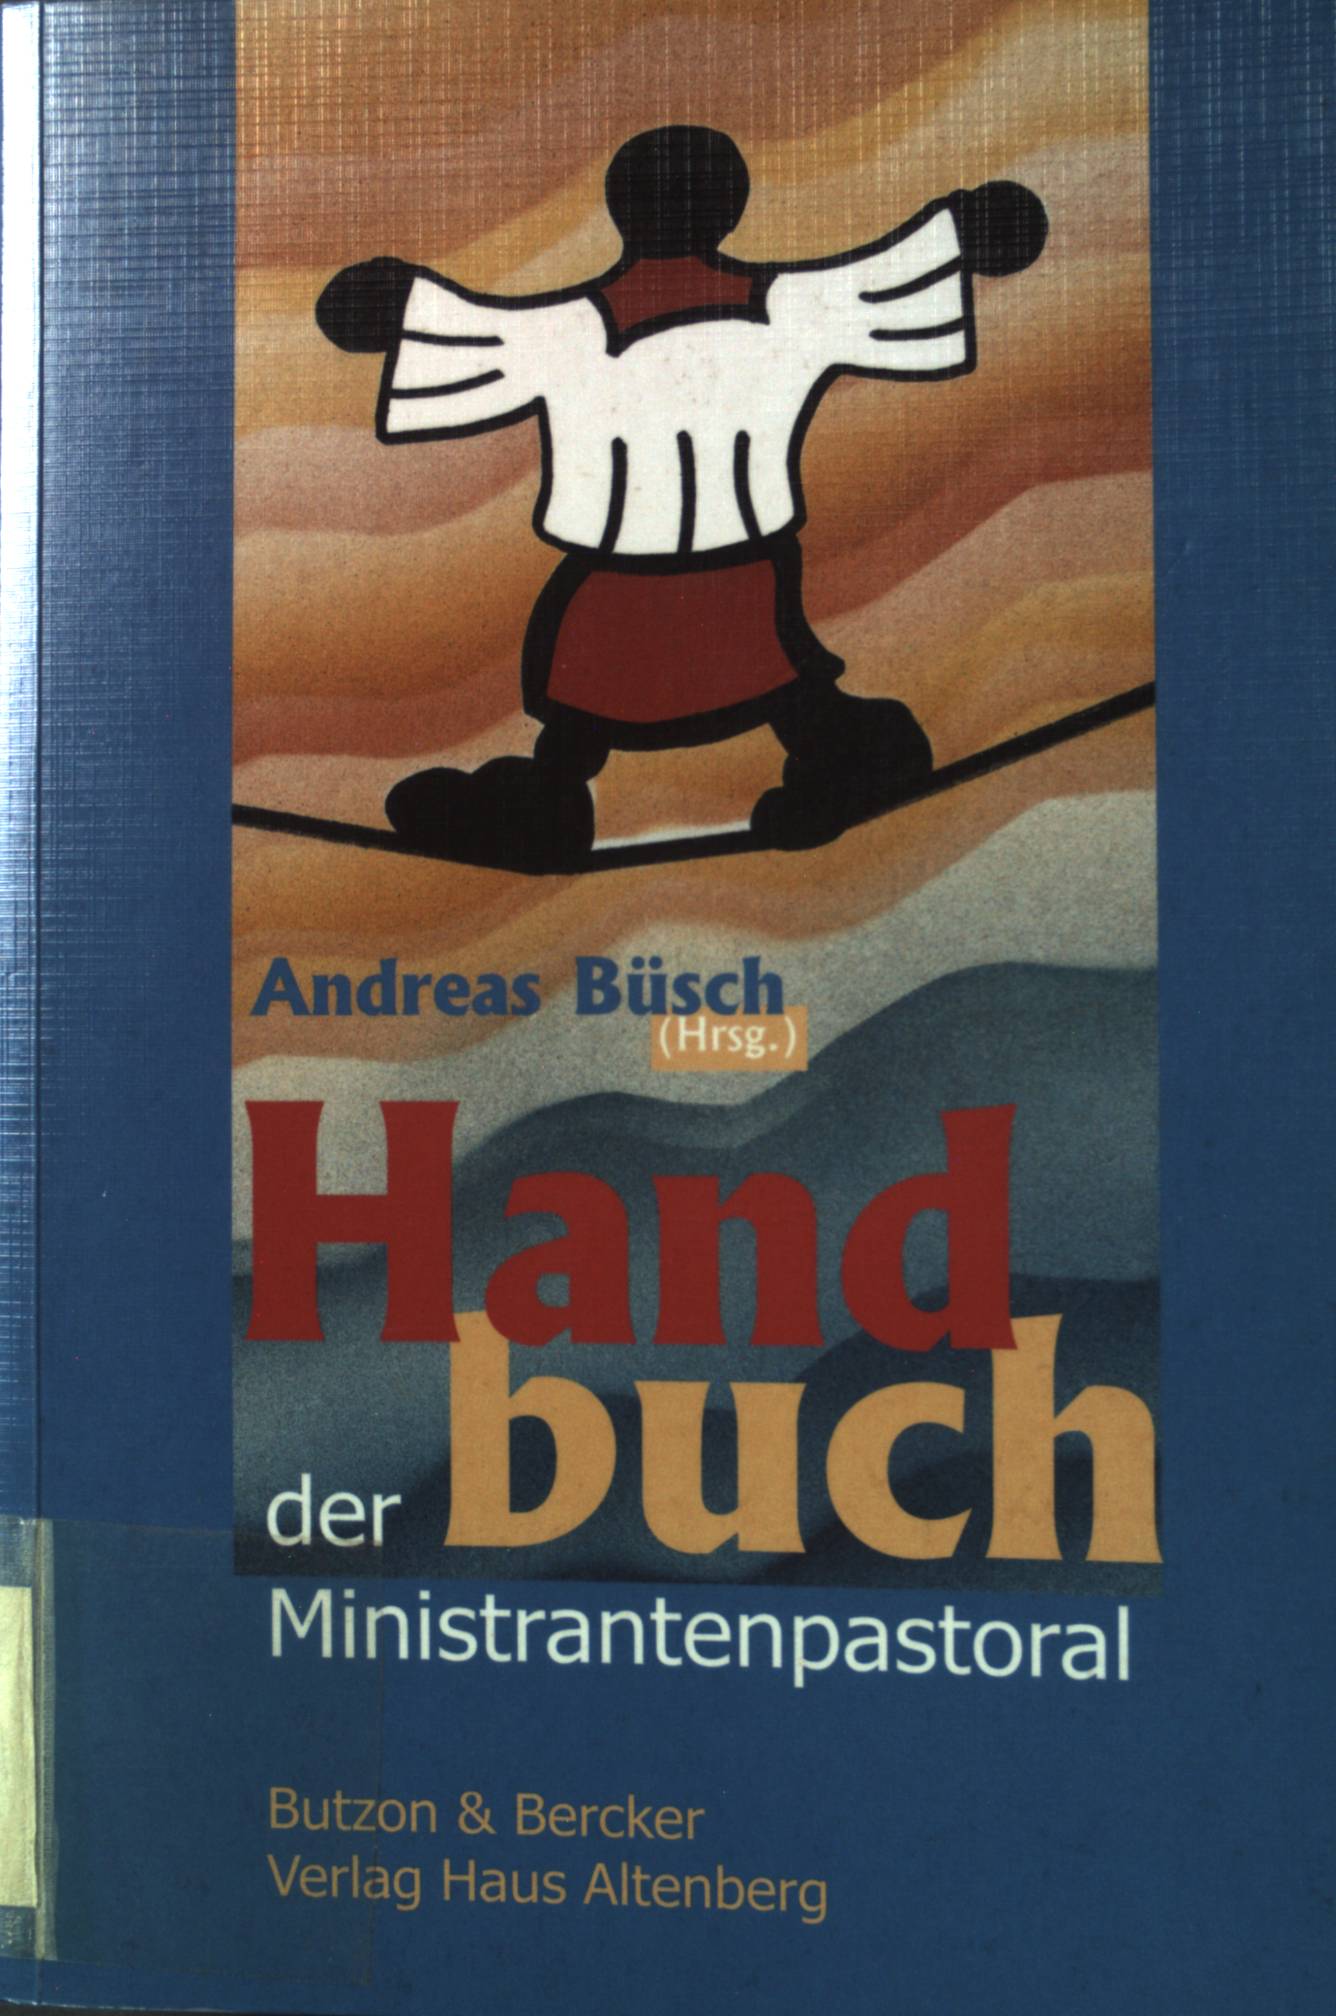 Handbuch der Ministrantenpastoral: Bezugspunkte - Praxisfelder - Chancen. - Büsch, Andreas (Herausgeber)